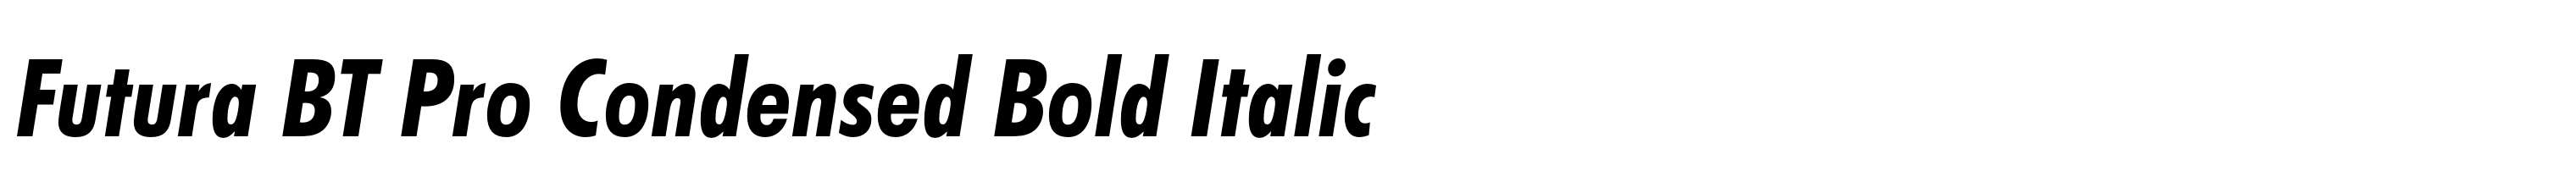 Futura BT Pro Condensed Bold Italic